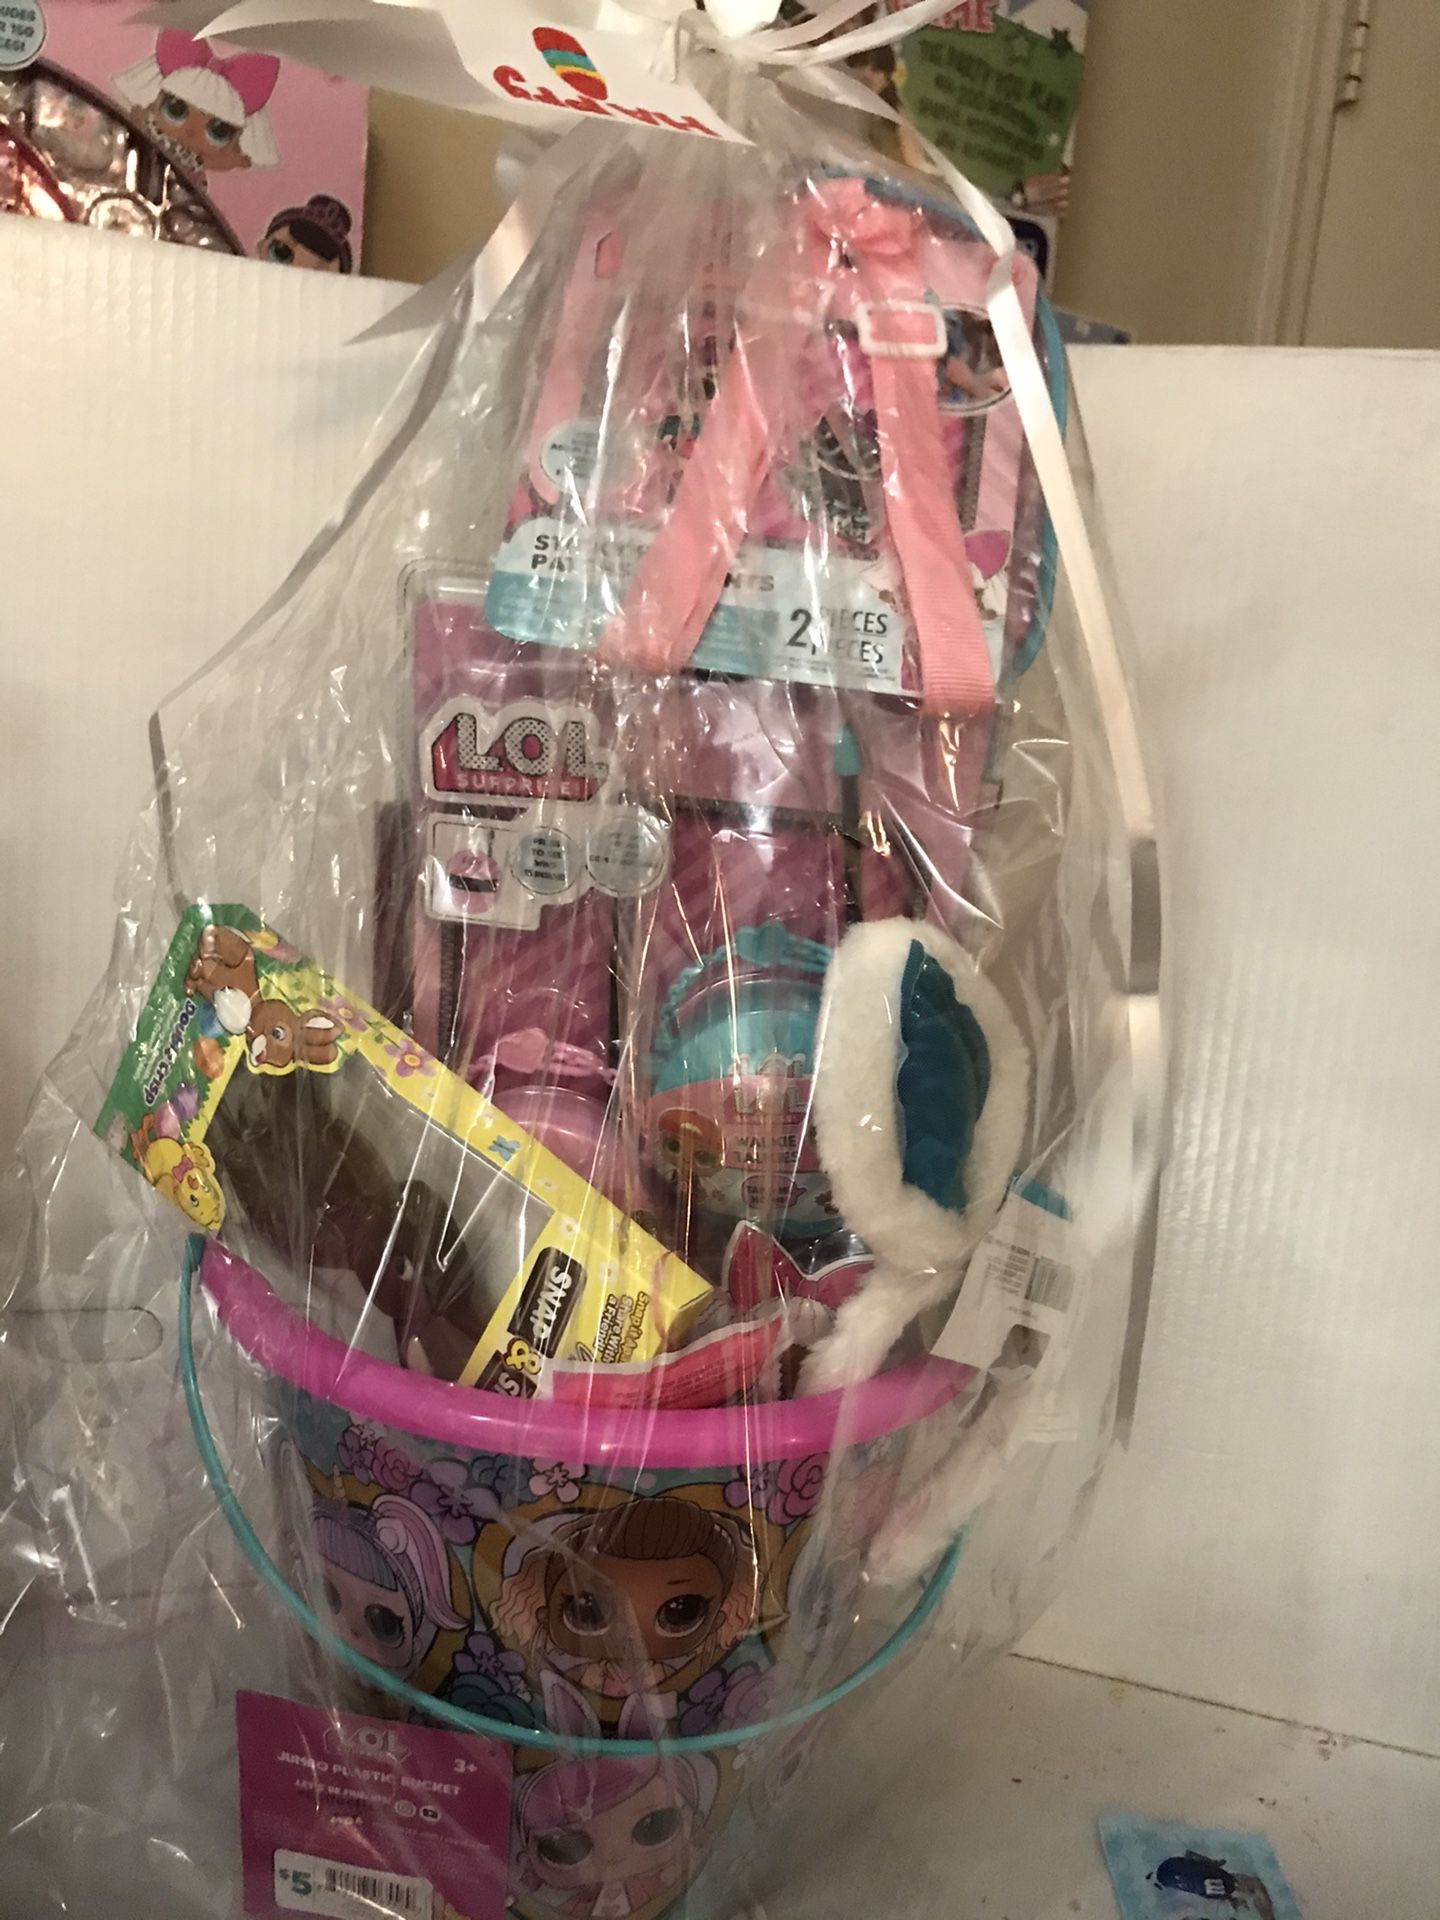 LOL Surprise Easter Basket